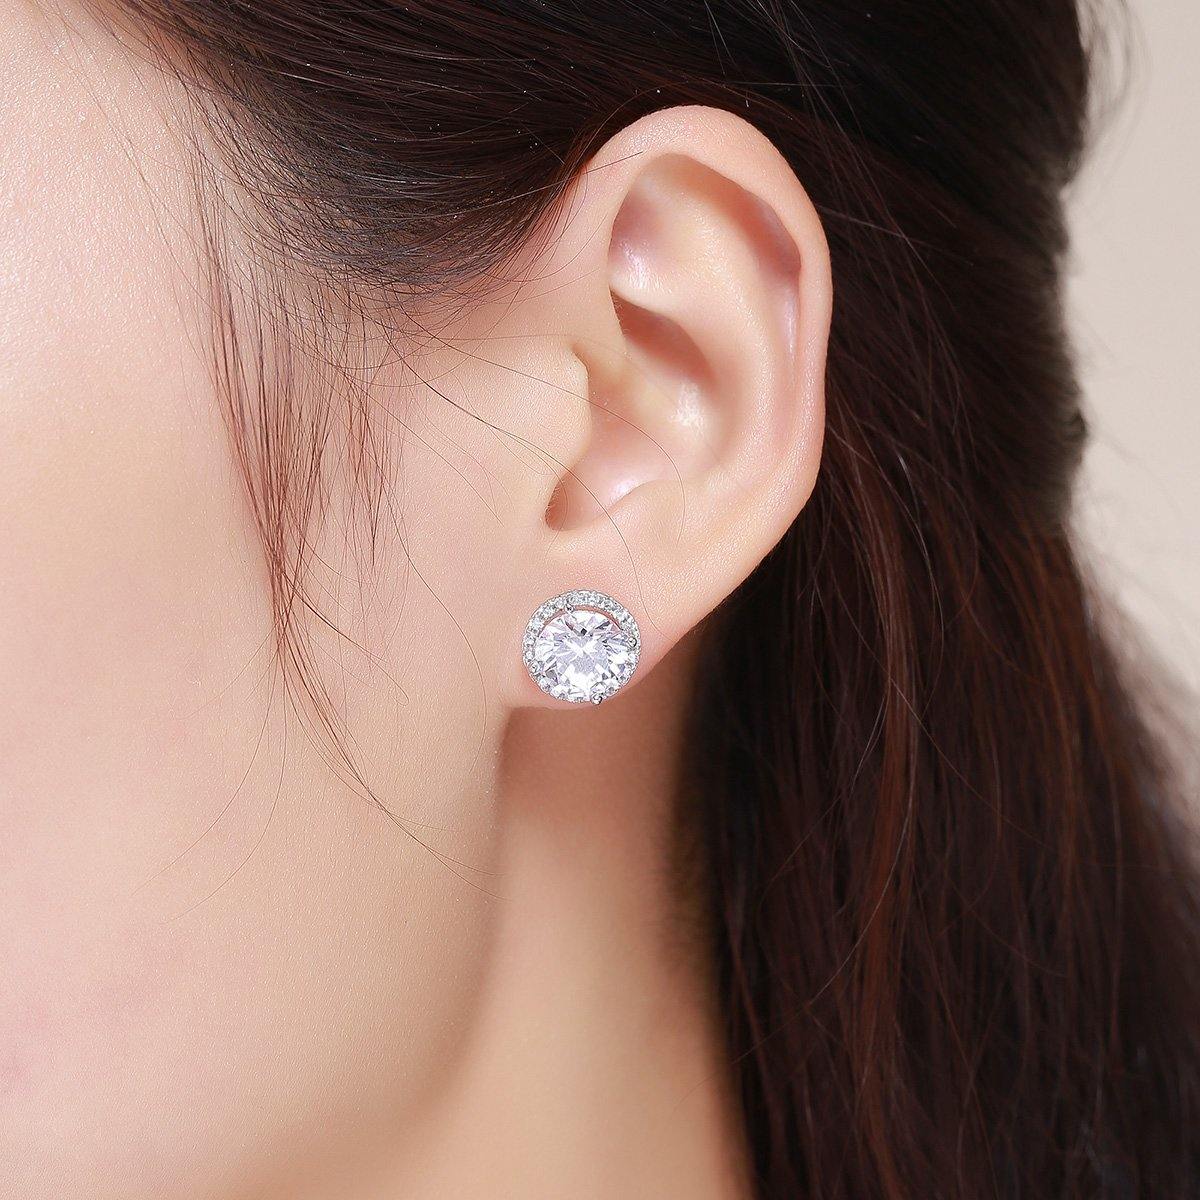 Noble Light 925 Sterling Silver Earrings - Aisllin Jewelry